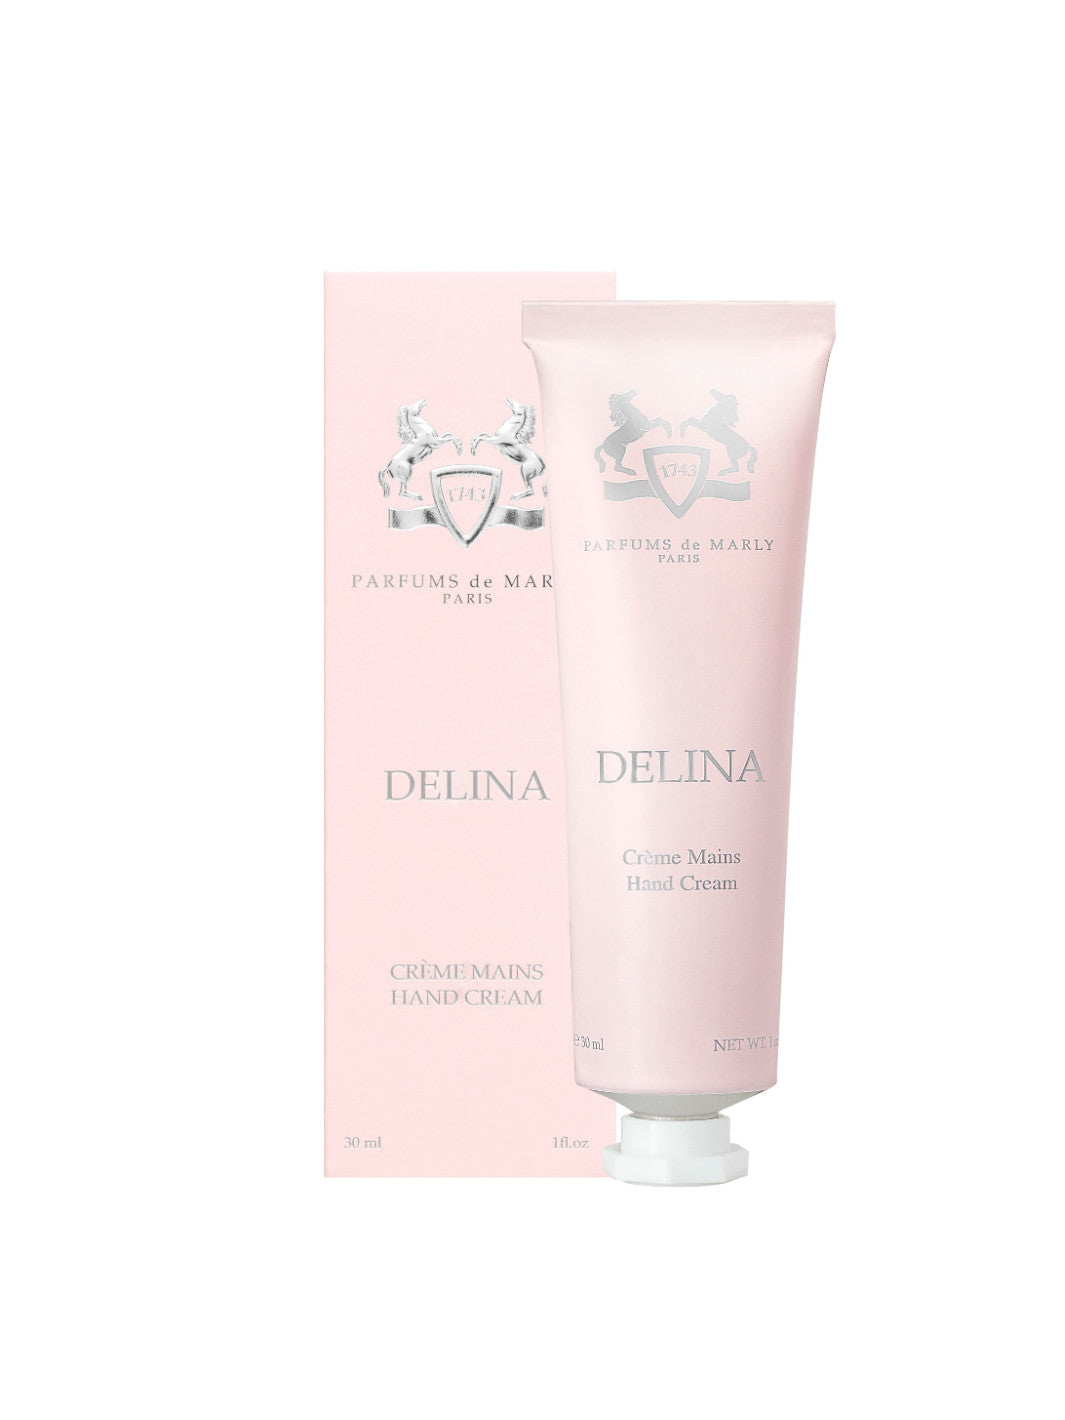 Delina Hand Cream